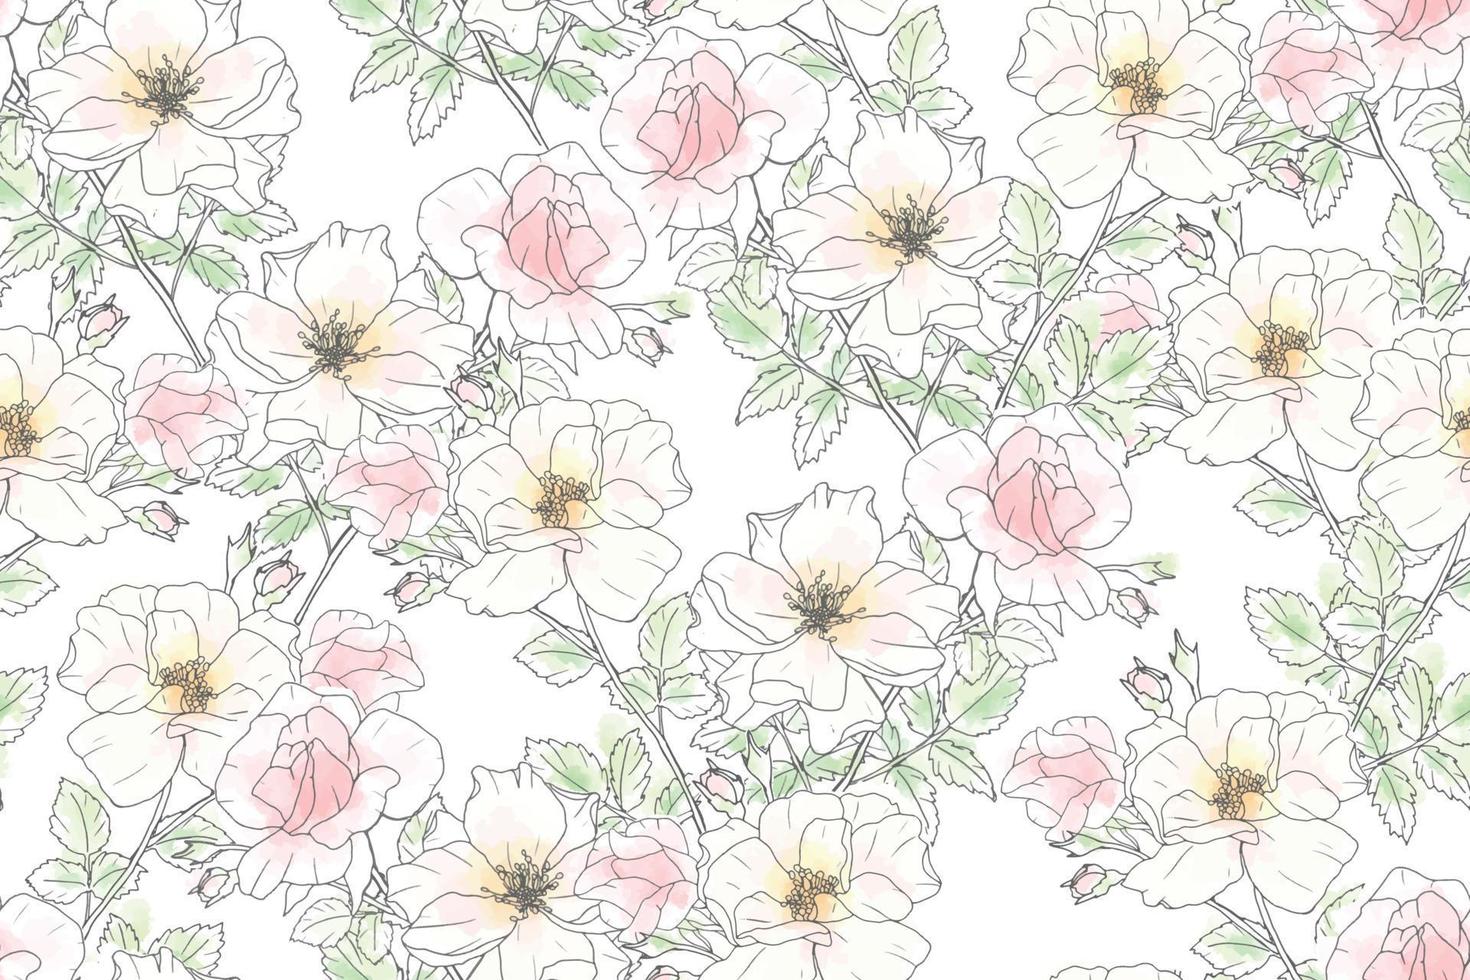 watercolor loose line art pink rose repeat seamless pattern vector